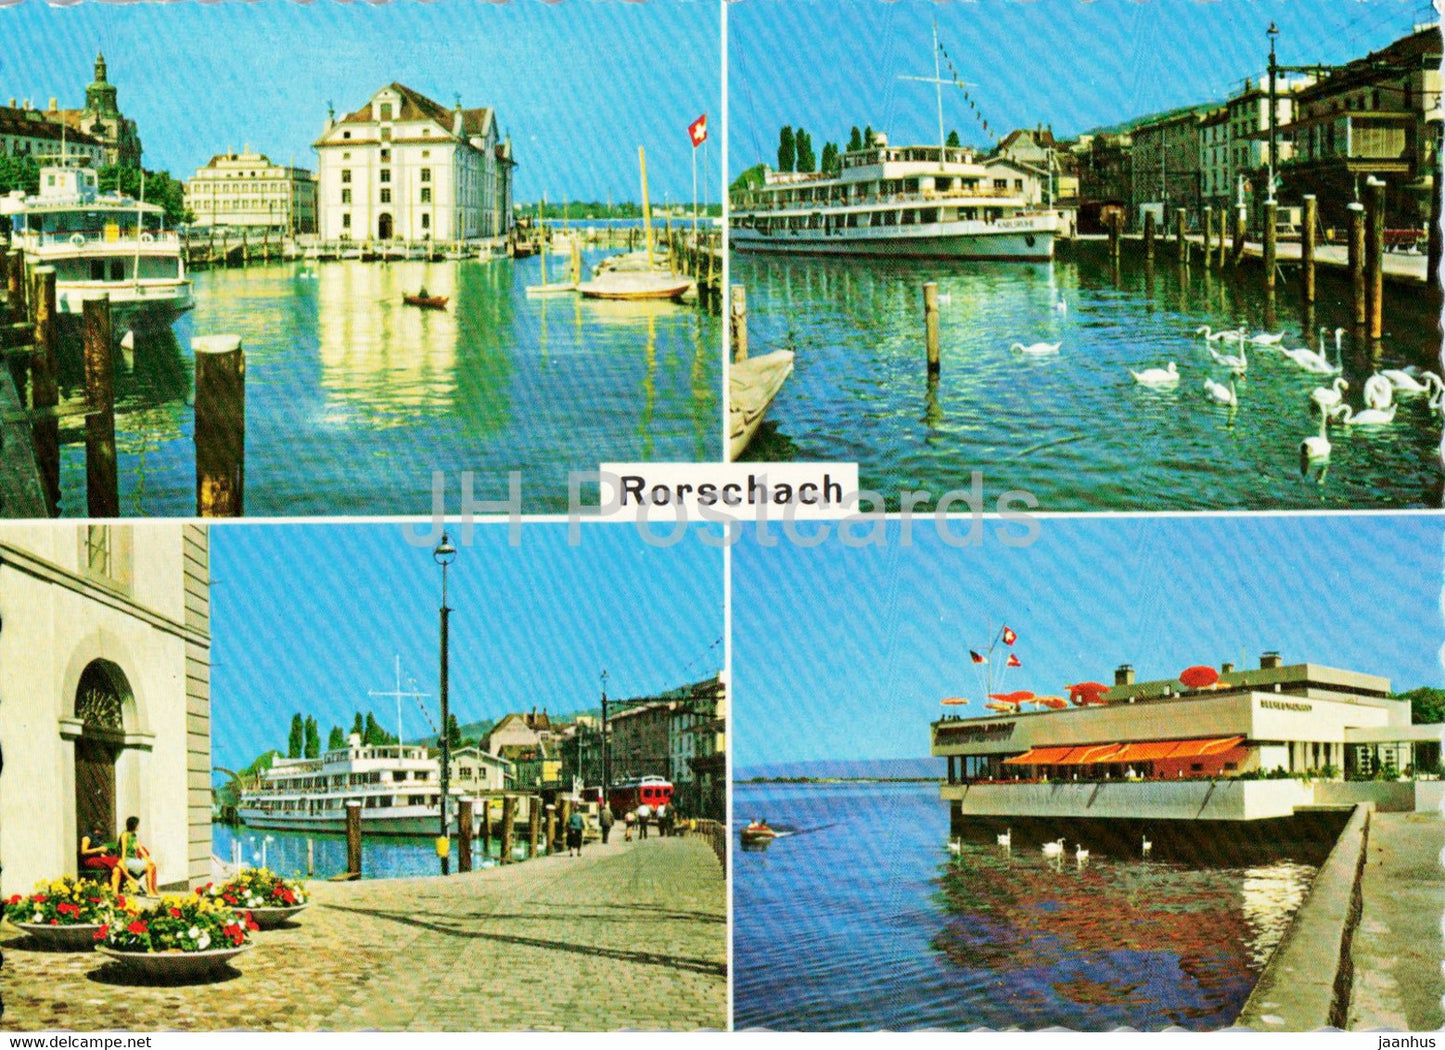 Rorschach - ship - 3221 - Switzerland - unused - JH Postcards